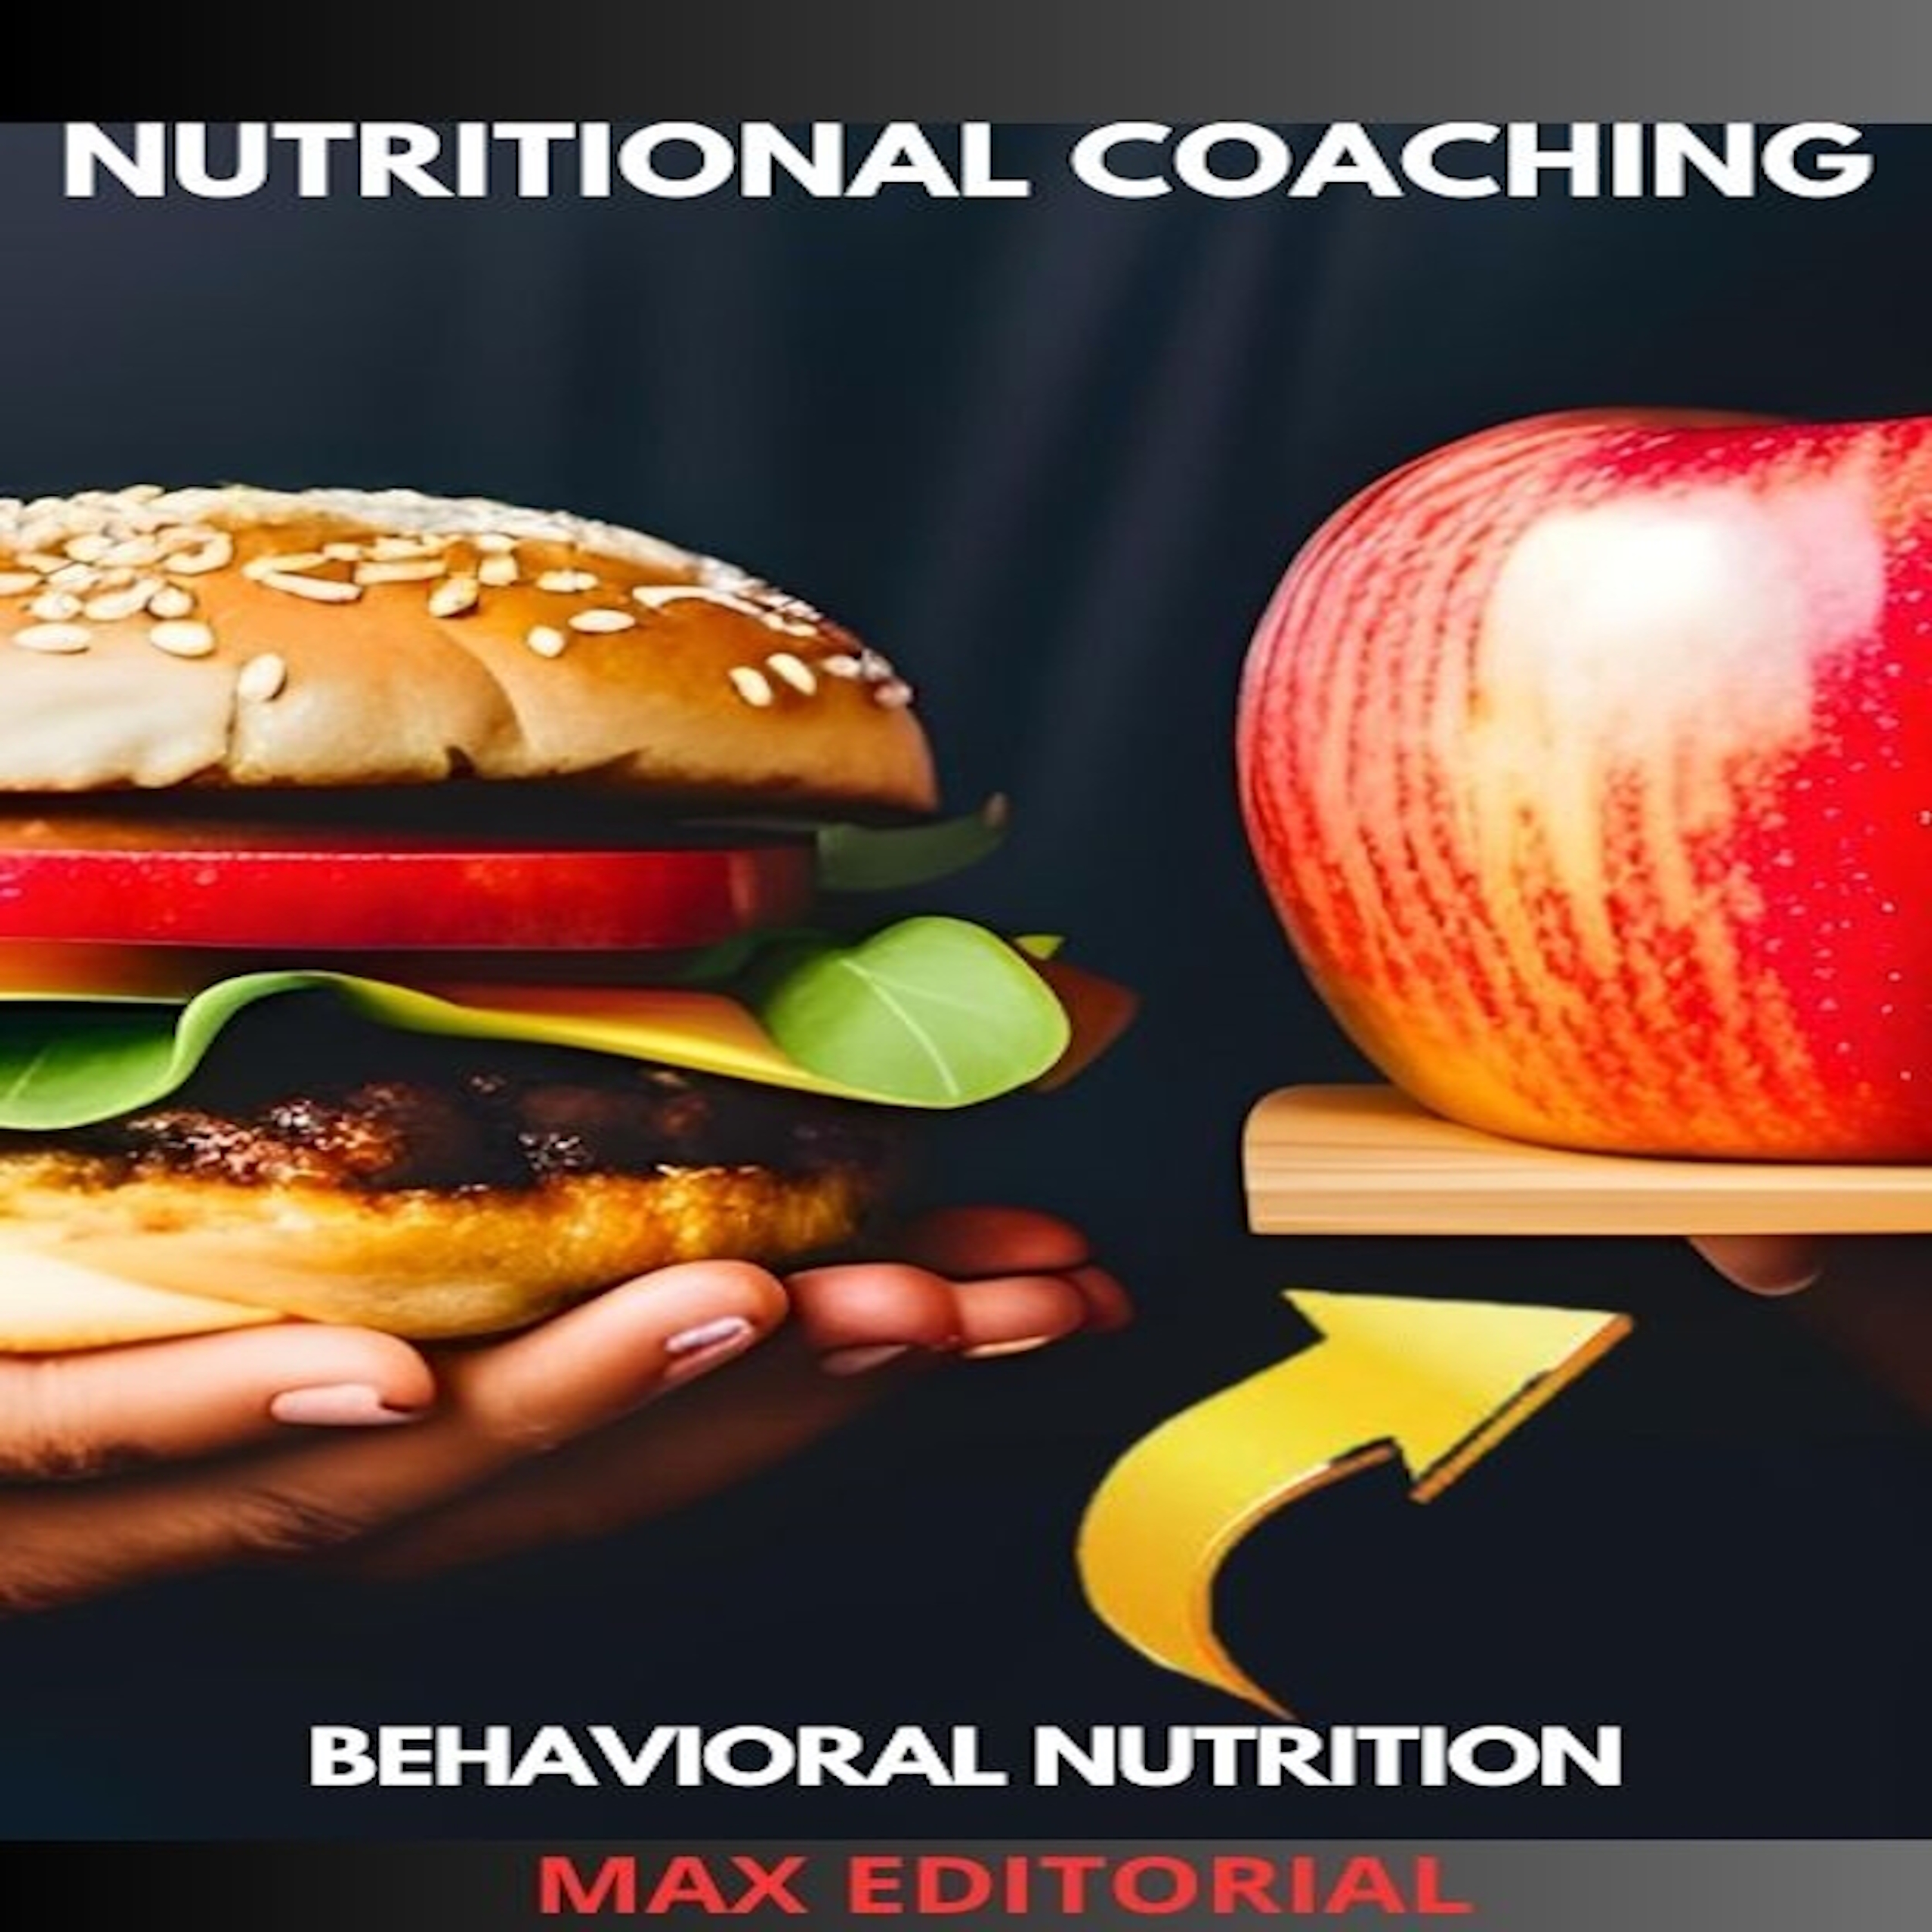 Nutritional Coaching